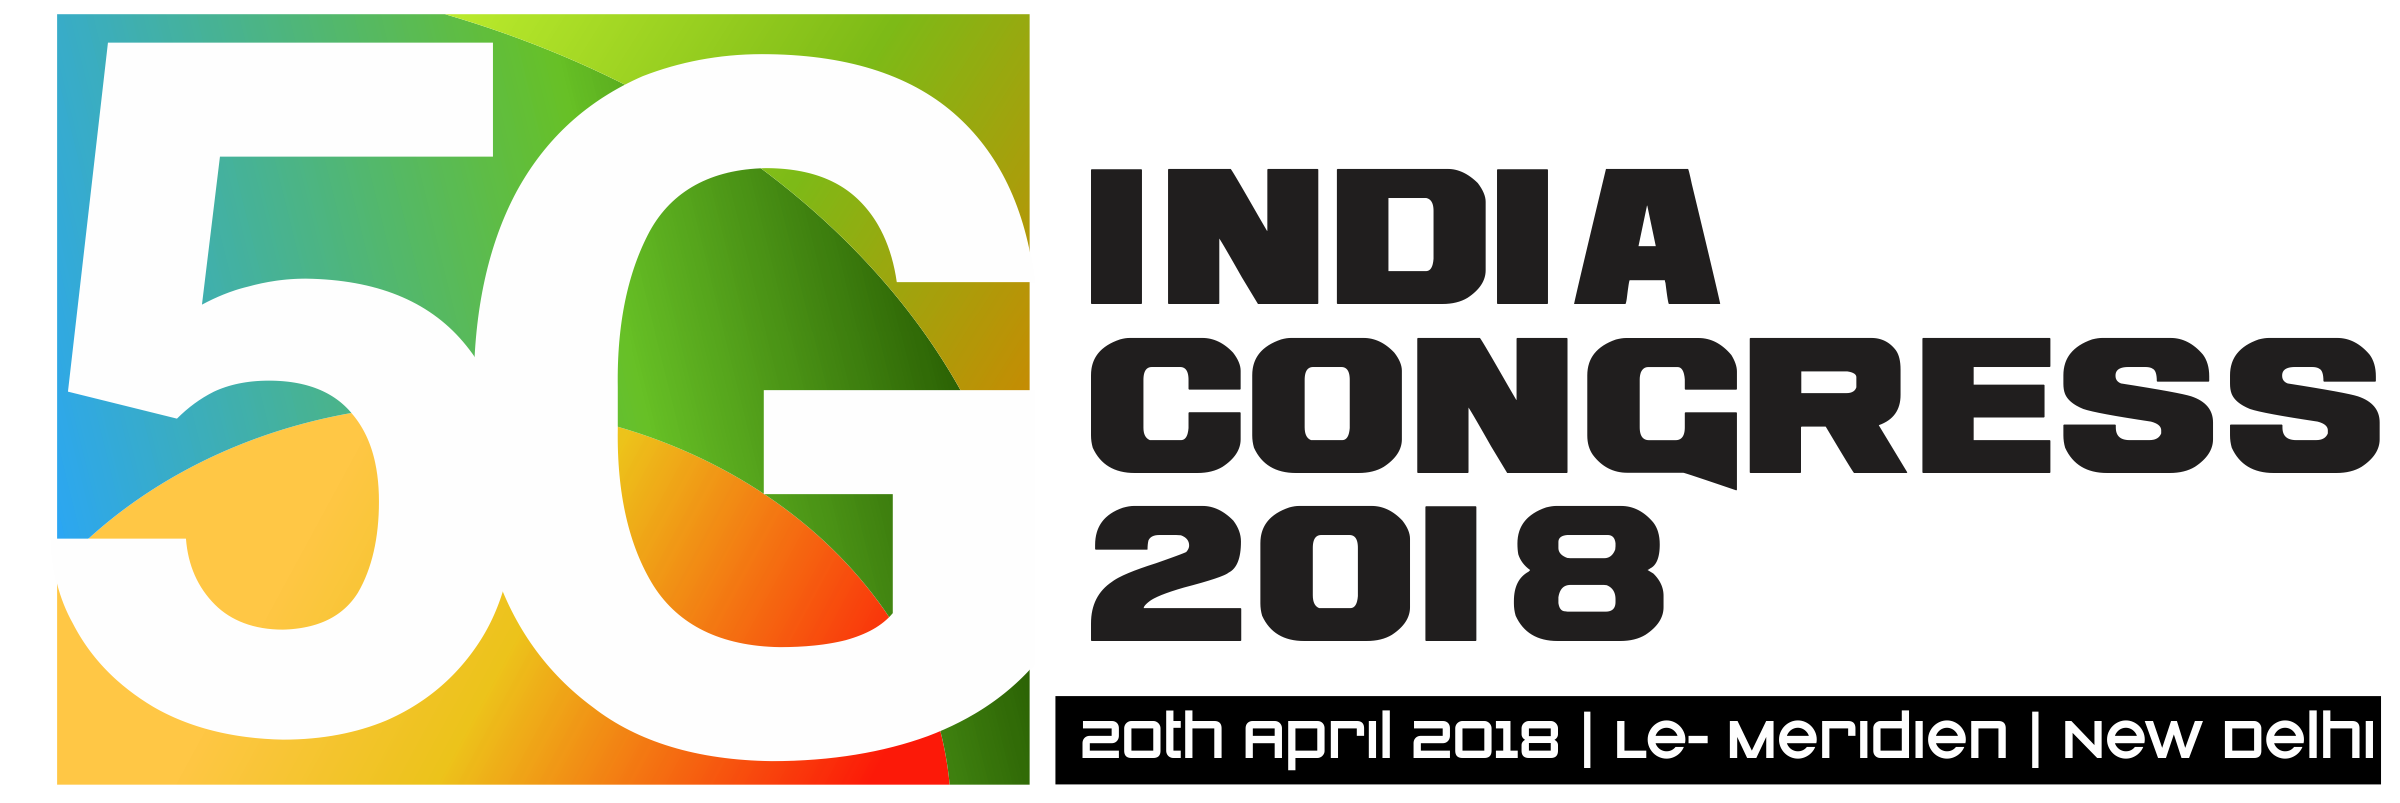 5G India Congress Logo